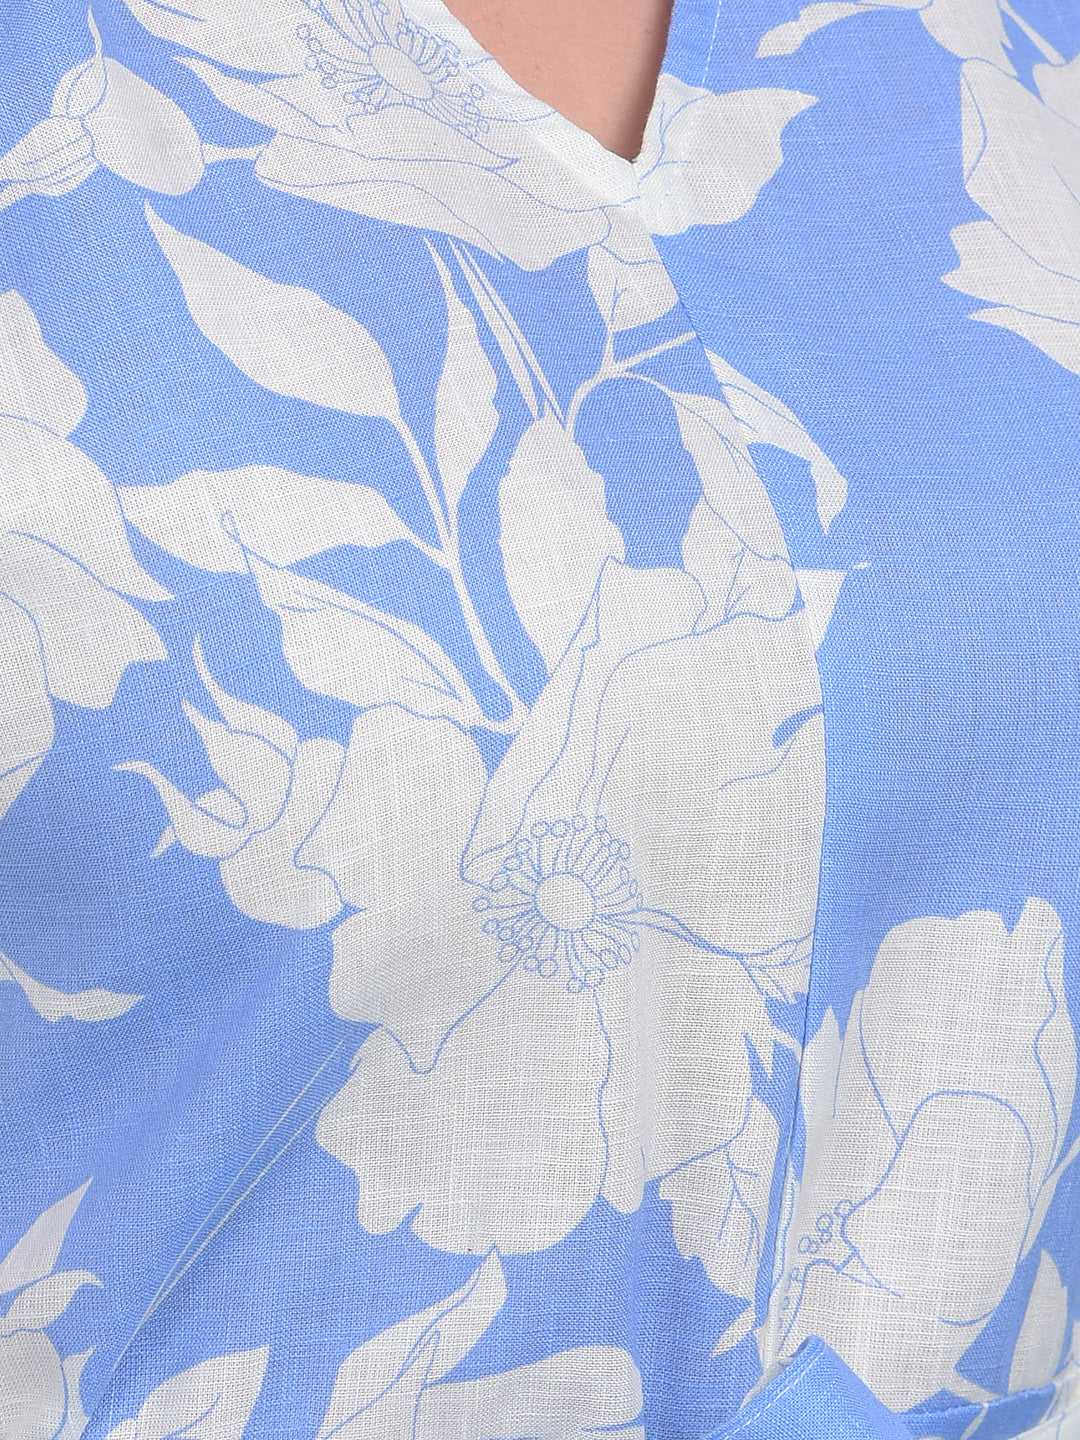 Blue Floral Print A-Line Dress-Women Dresses-Crimsoune Club